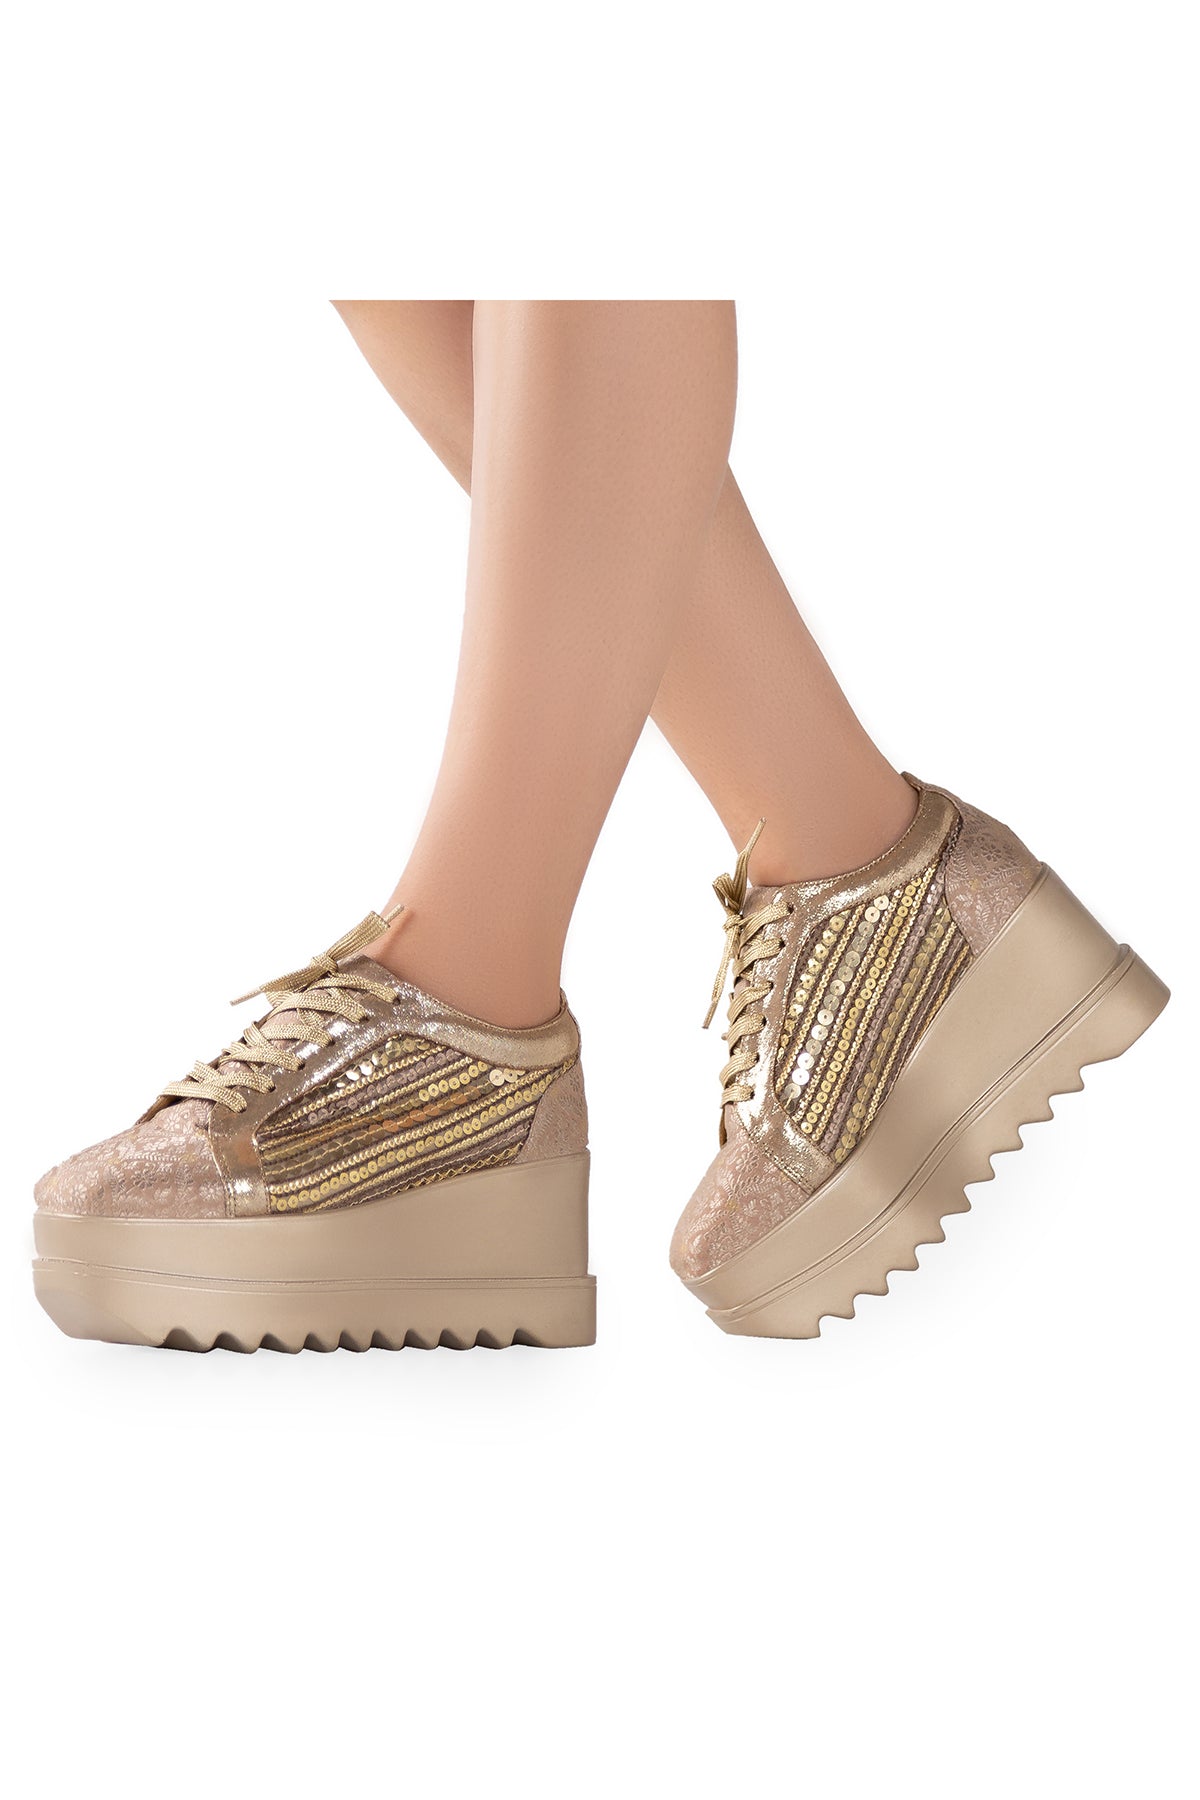 Gatsby Wedge Sneakers Look in your feet - Anaar